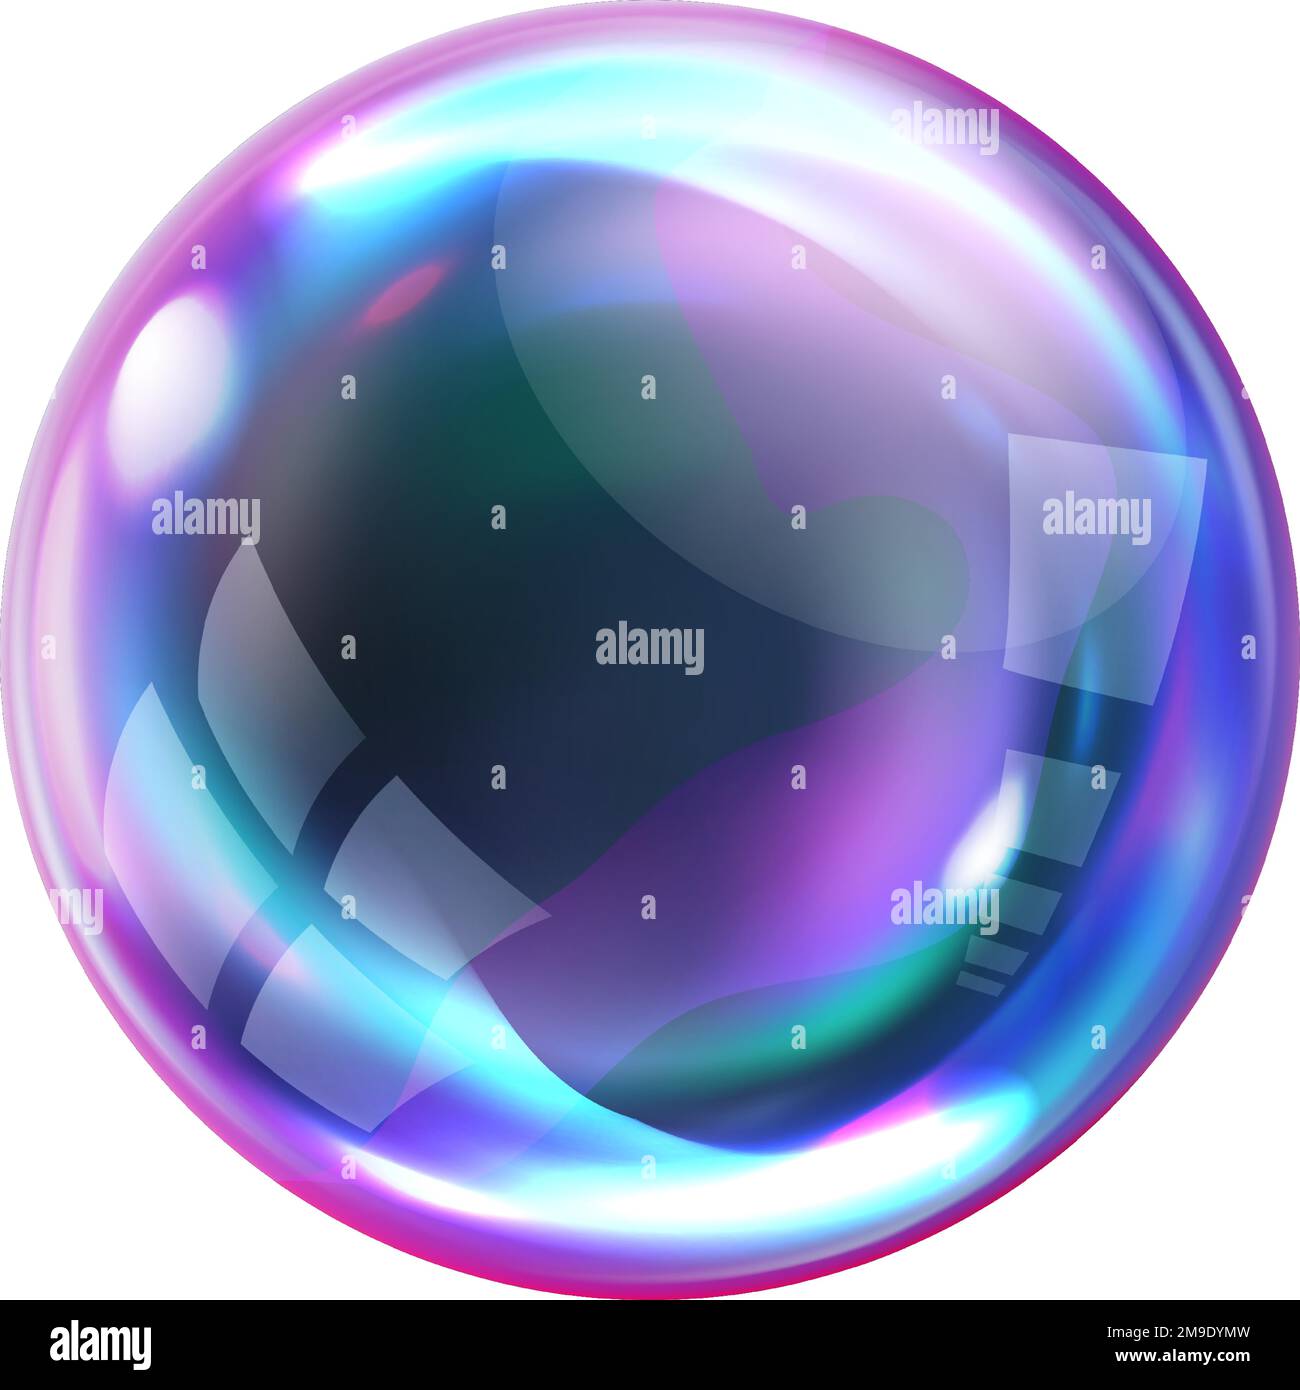 Bolla di sapone, sfera d'aria trasparente realistica di colori arcobaleno con riflessi e luci isolate su sfondo bianco, illustrazioni vettoriali Illustrazione Vettoriale